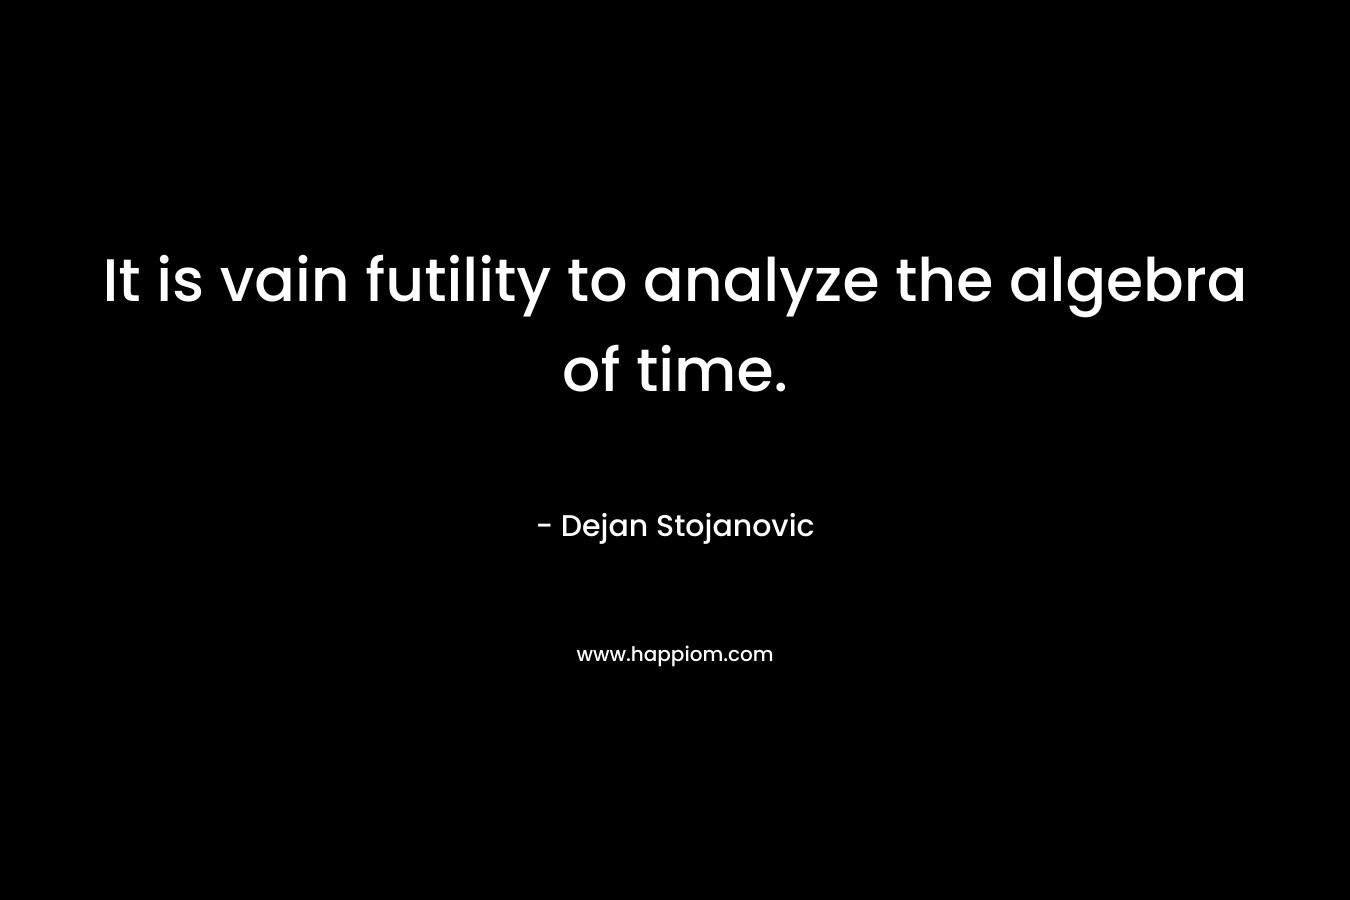 It is vain futility to analyze the algebra of time.